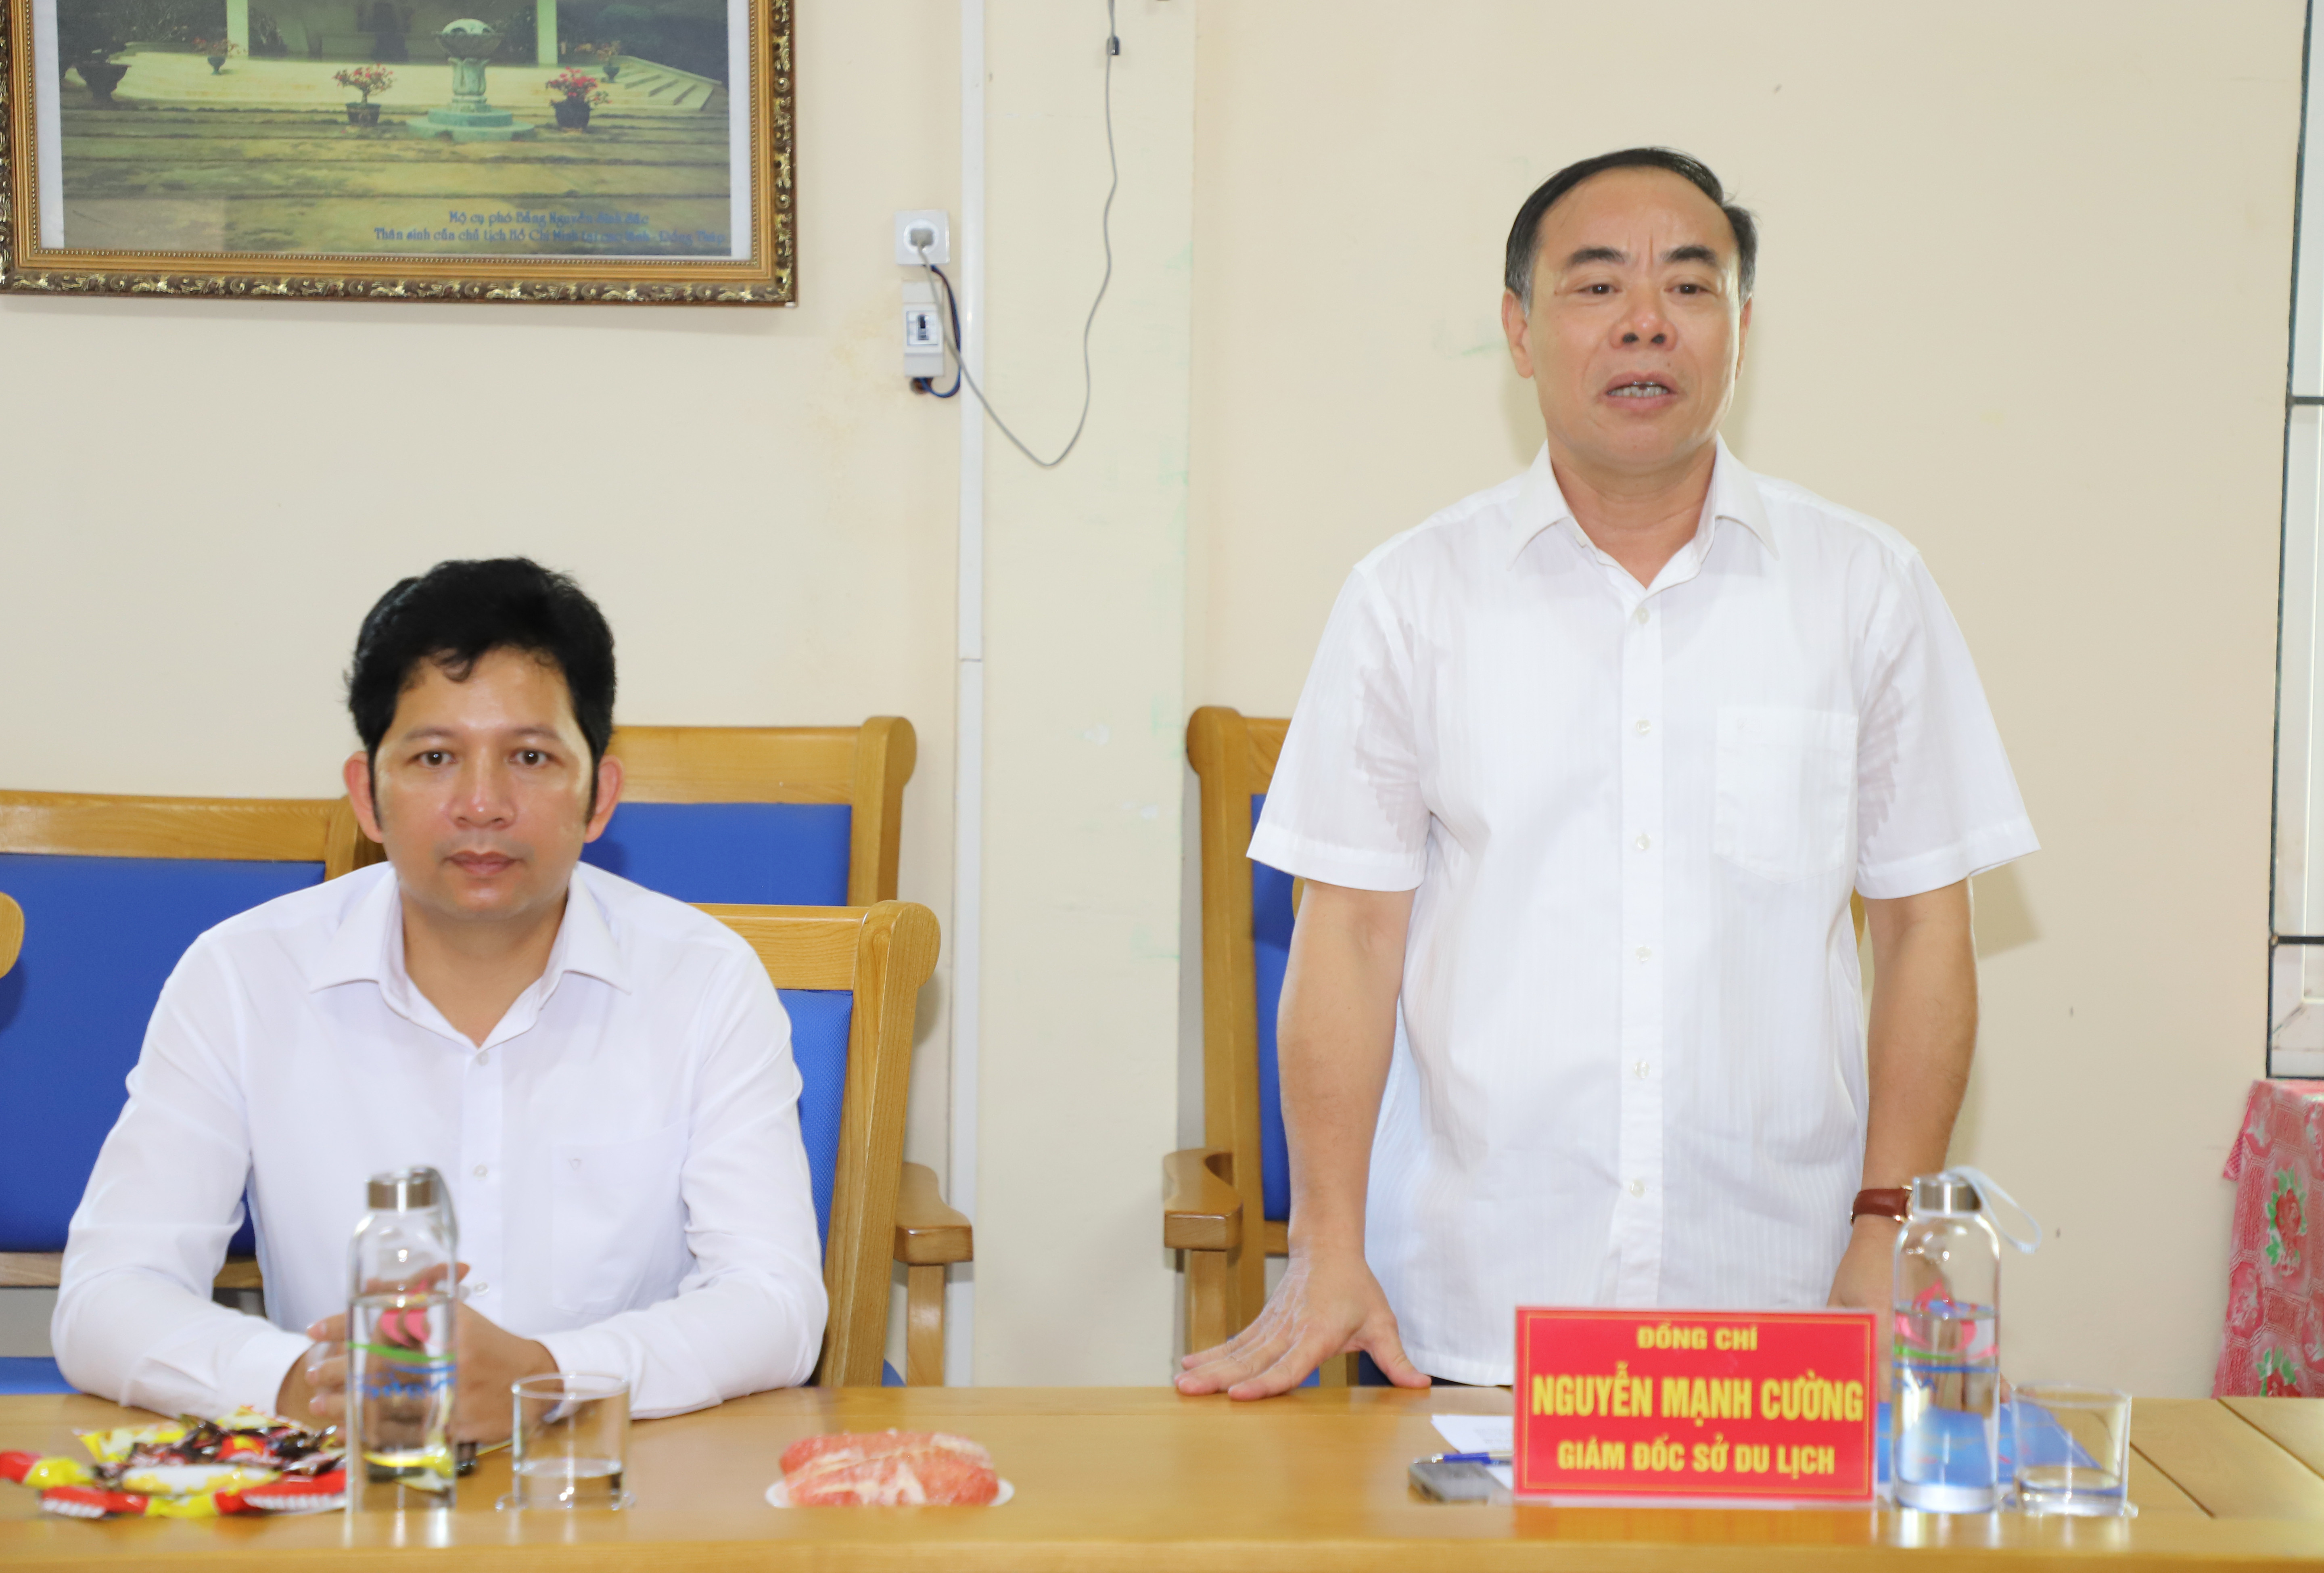 Ông Nguyễn Mạnh Cường - Giám đốc Sở Du lịch báo cáo kết quả du lịch 6 tháng đầu năm. Ảnh: Phạm Bằng